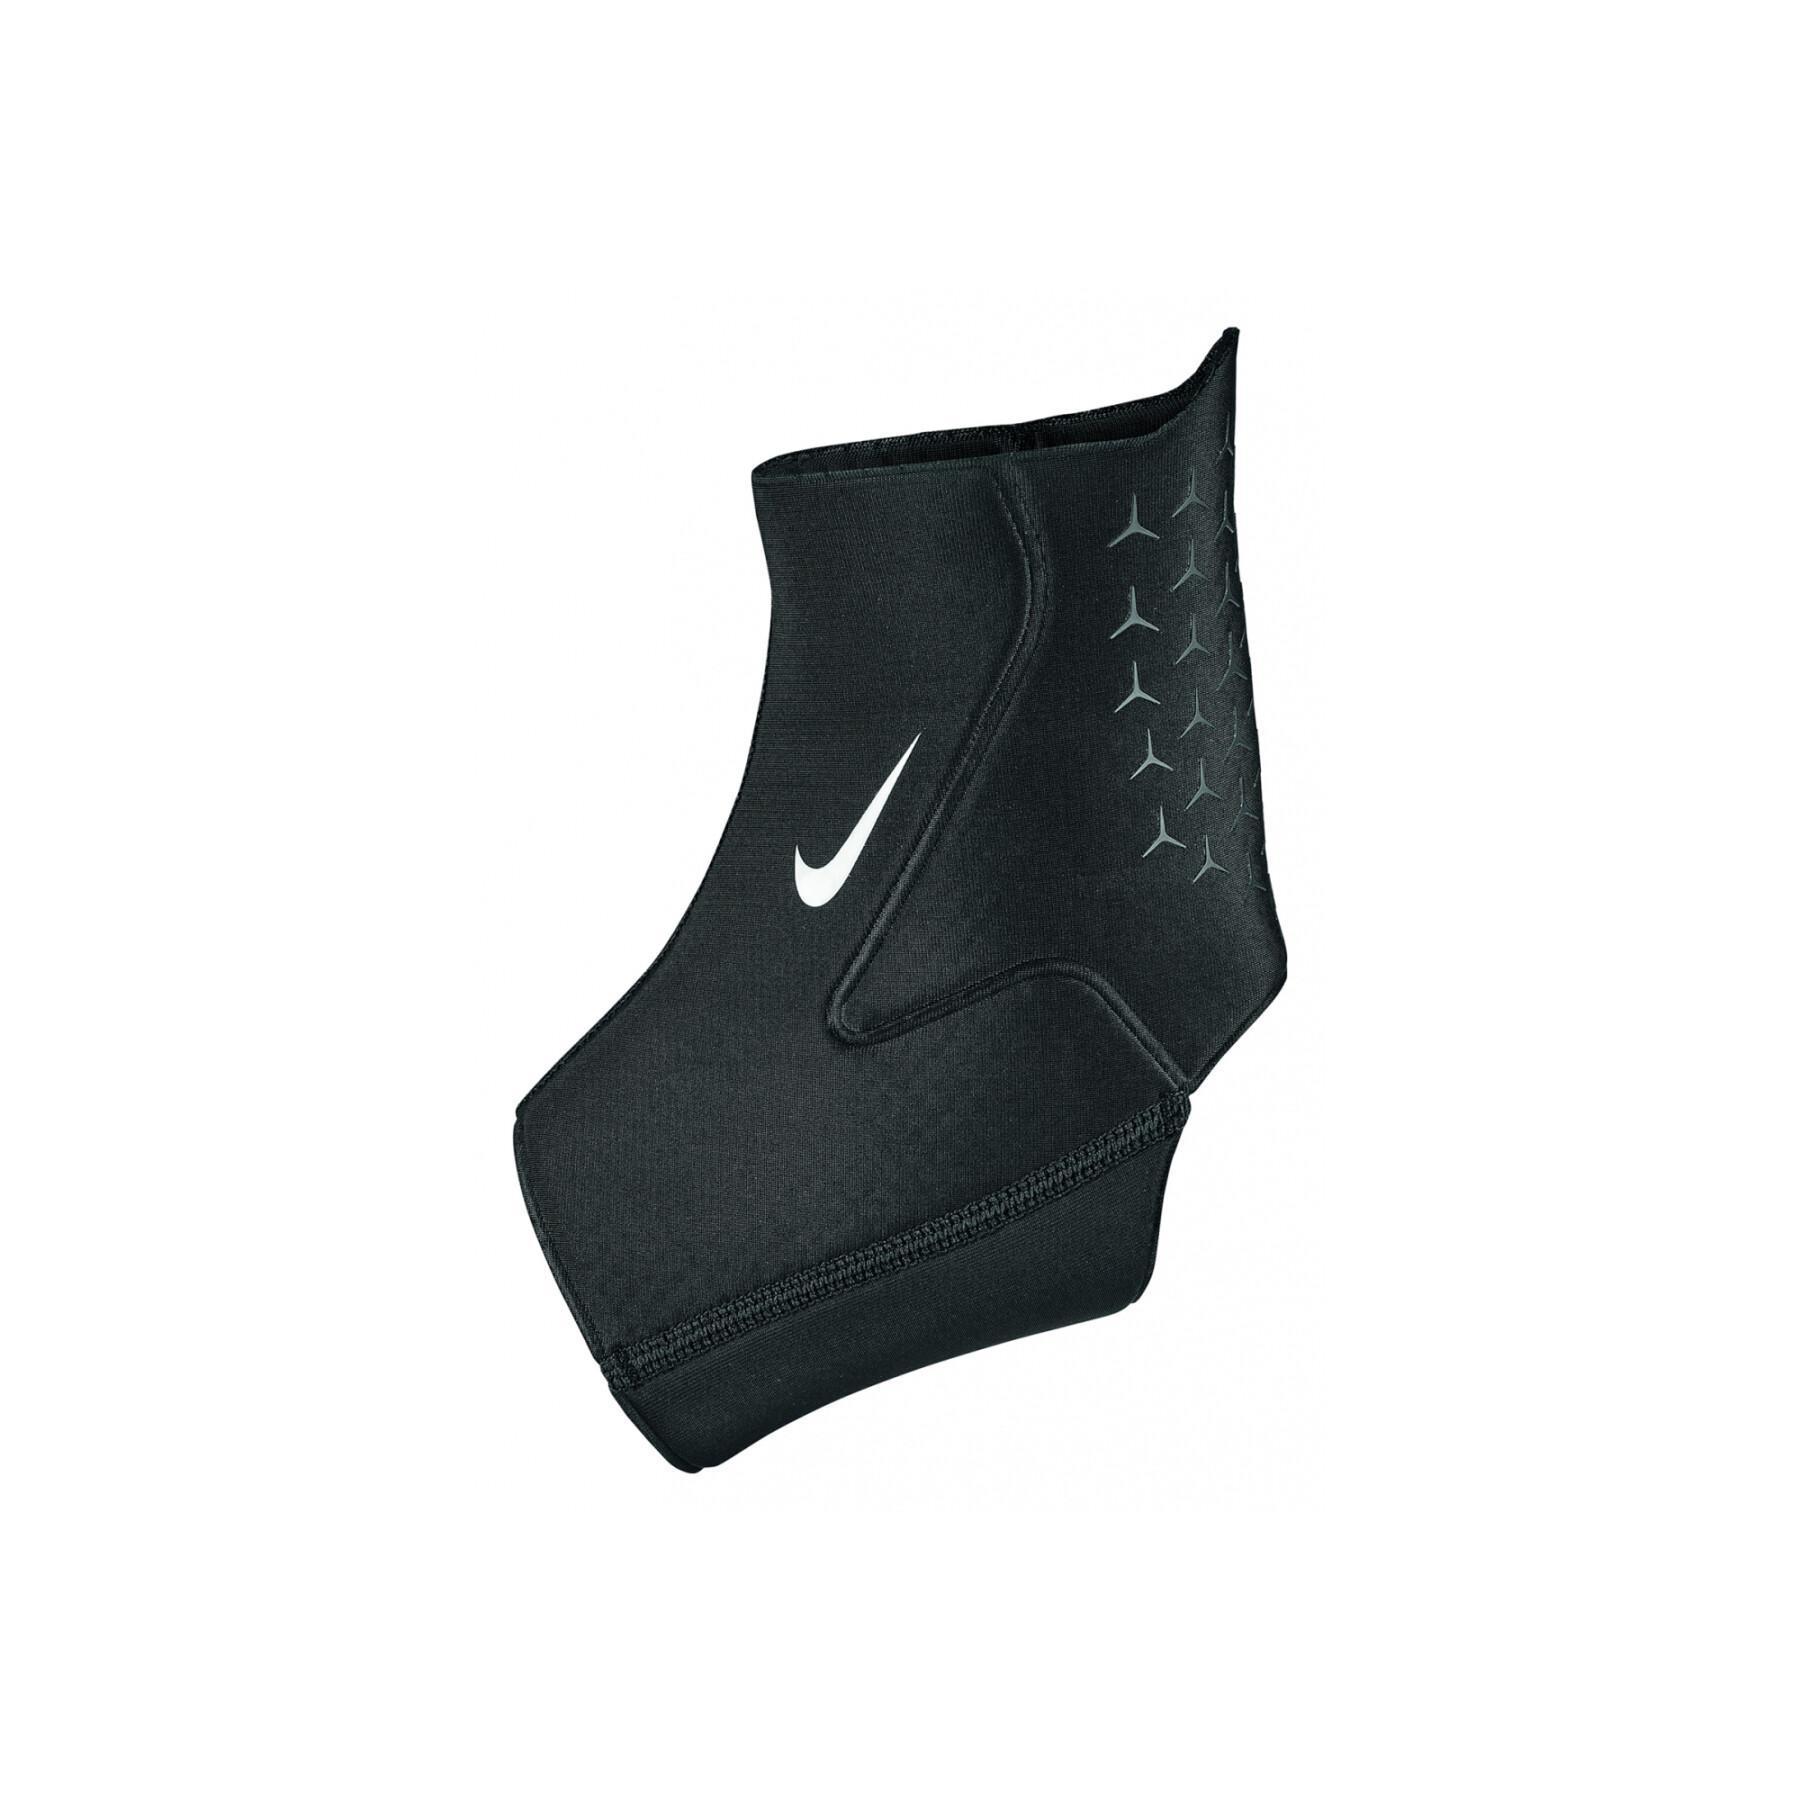 Tobillera Nike pro 3.0